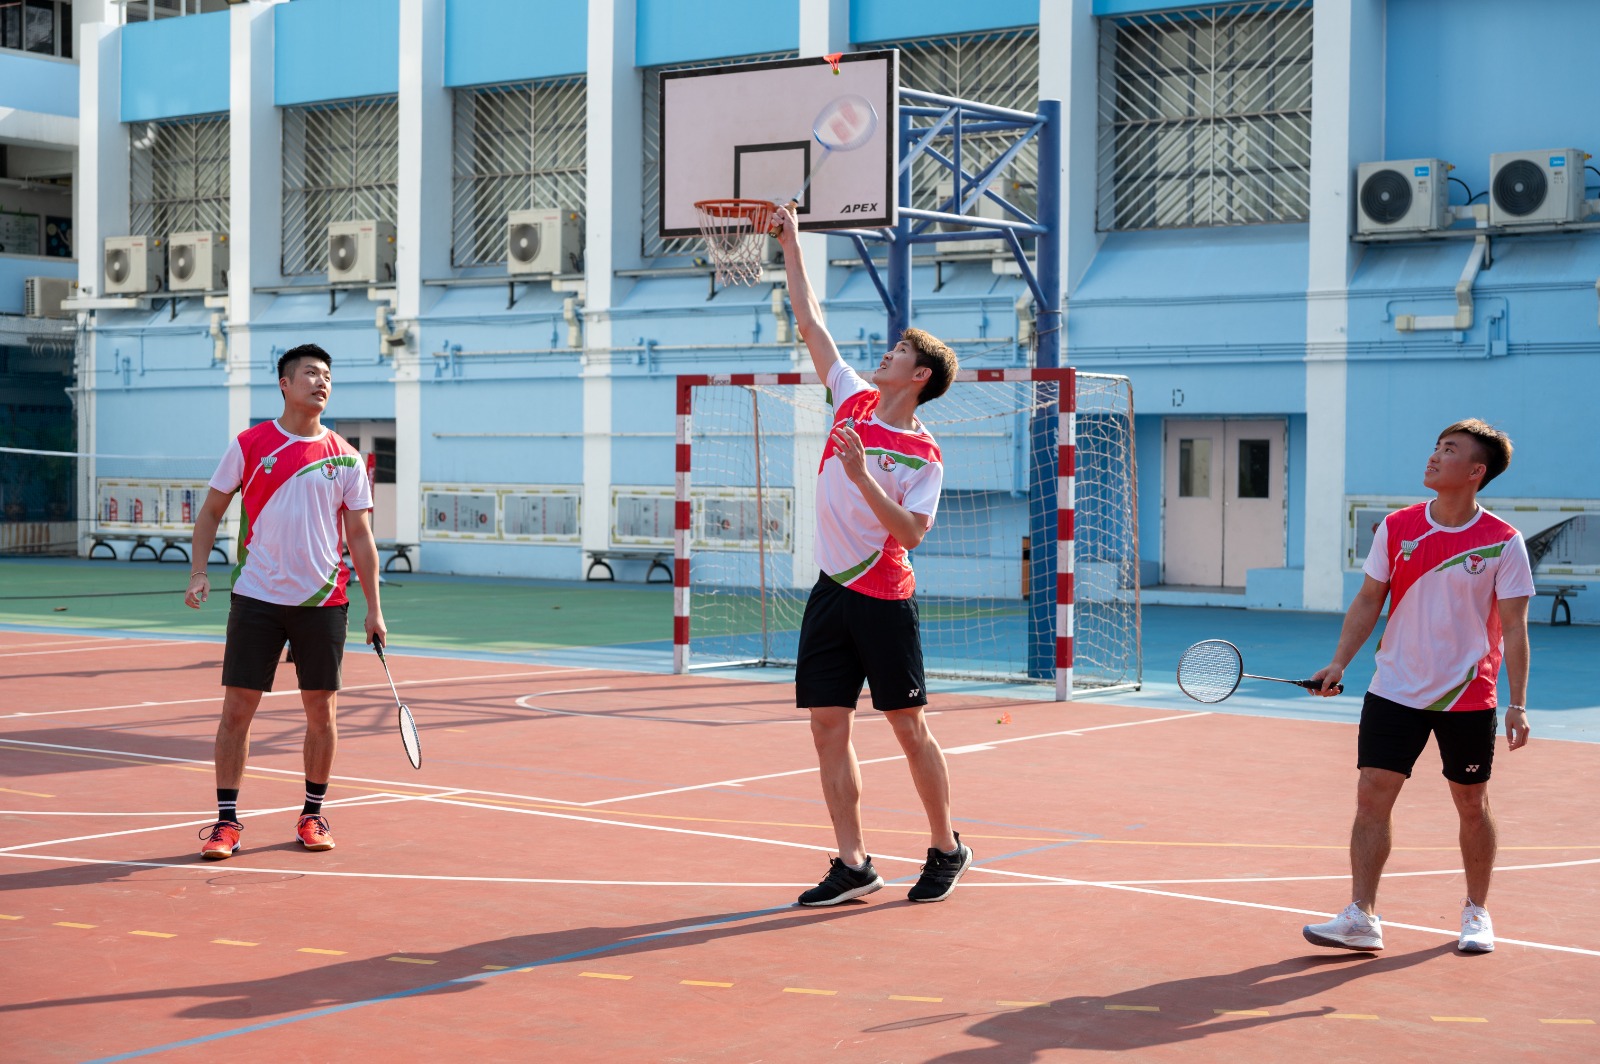 羅卓謙(左)、張德正(中)、呂俊瑋(右)示範戶外羽毛球玩法